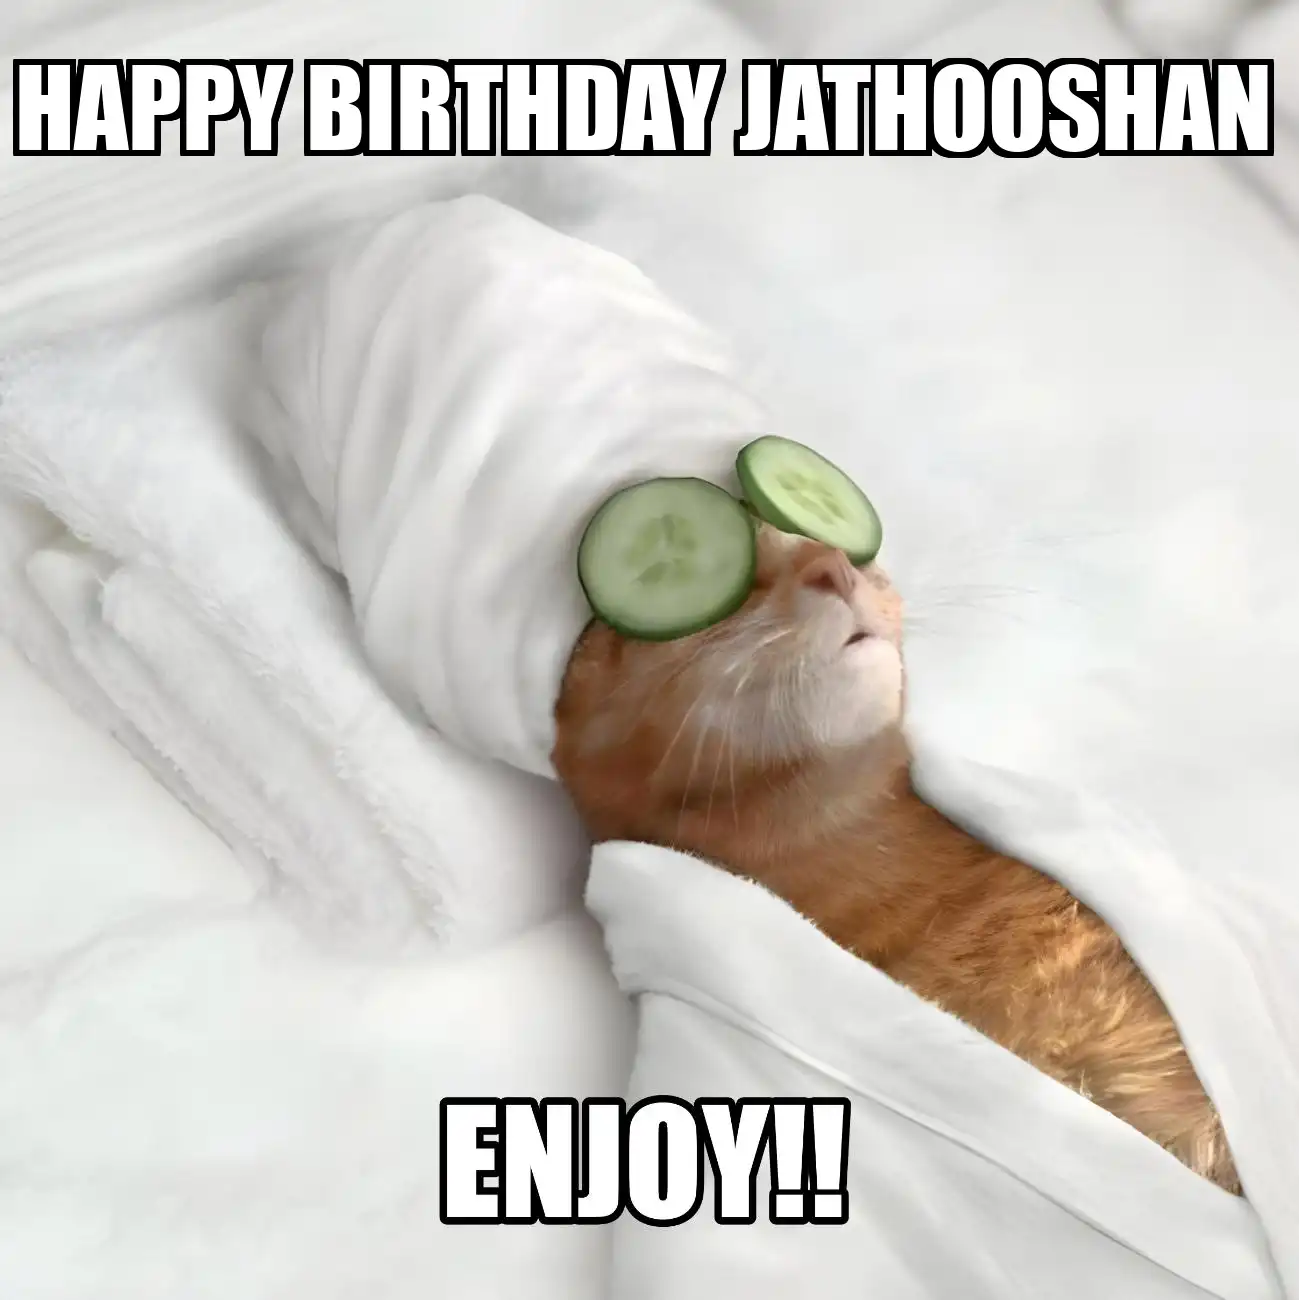 Happy Birthday Jathooshan Enjoy Cat Meme